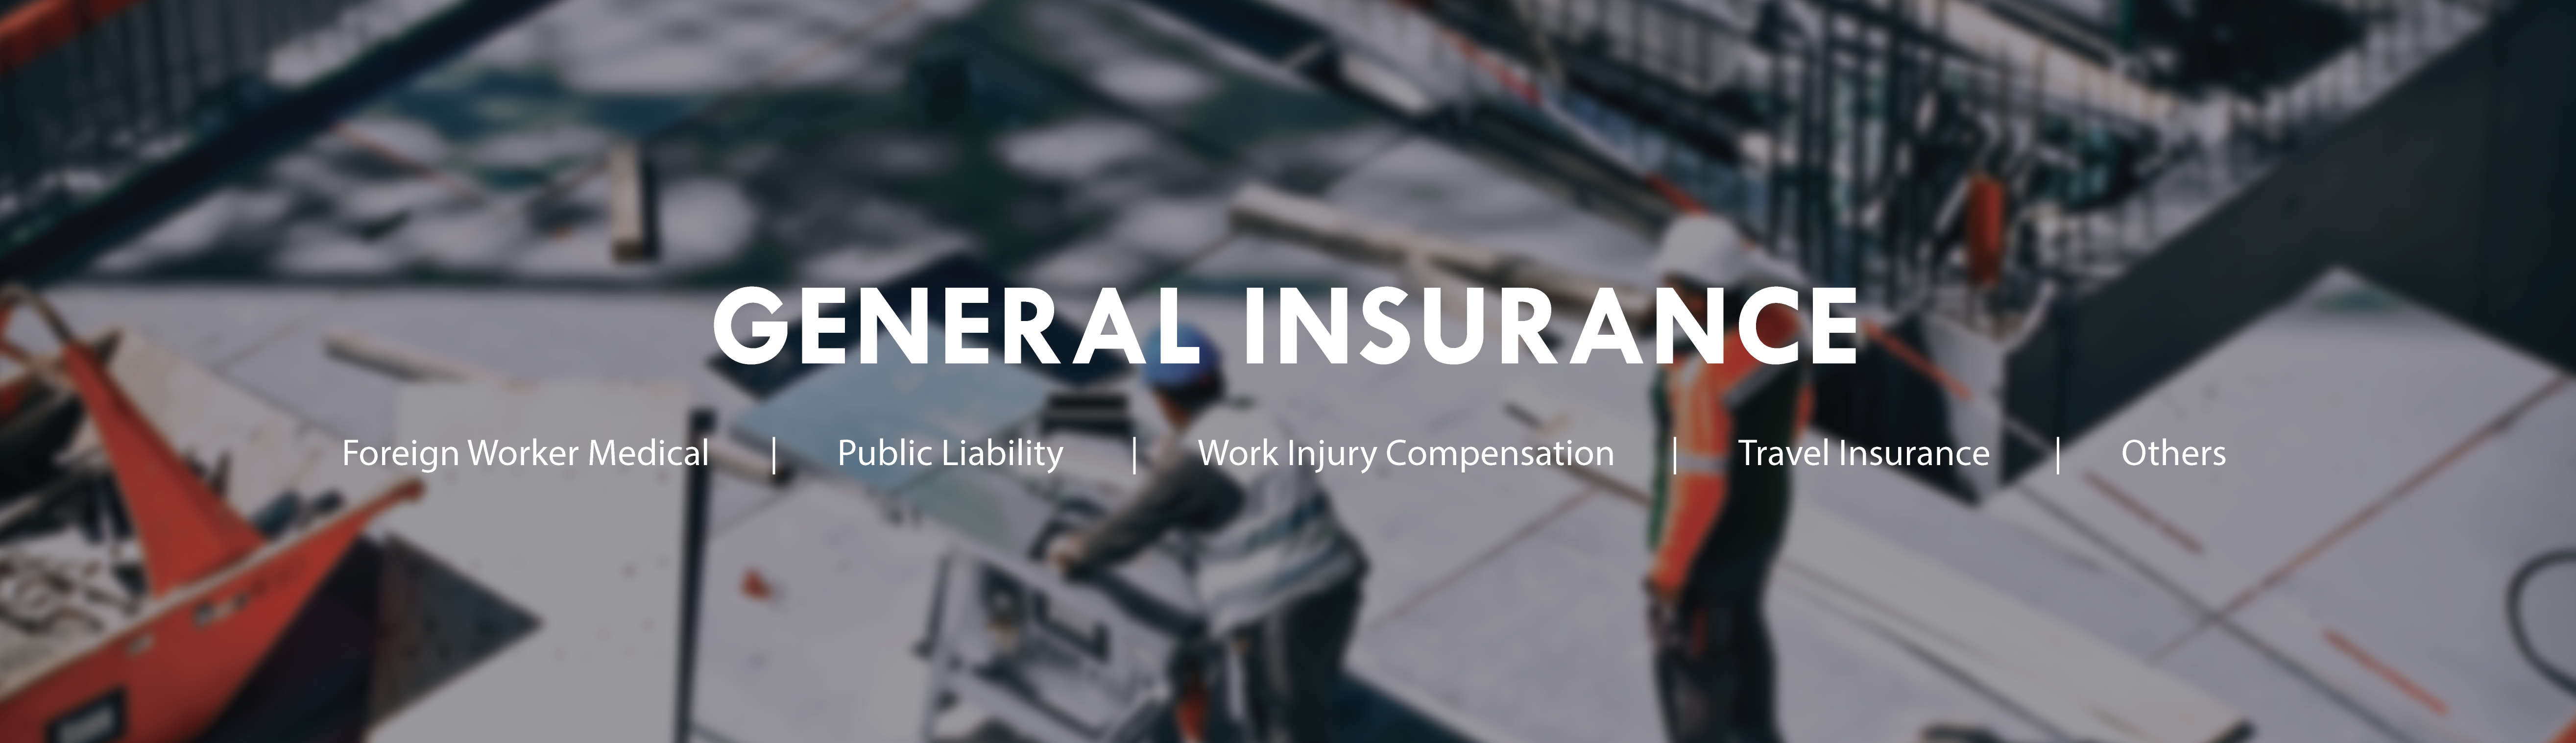 General Insurance - ABWIN